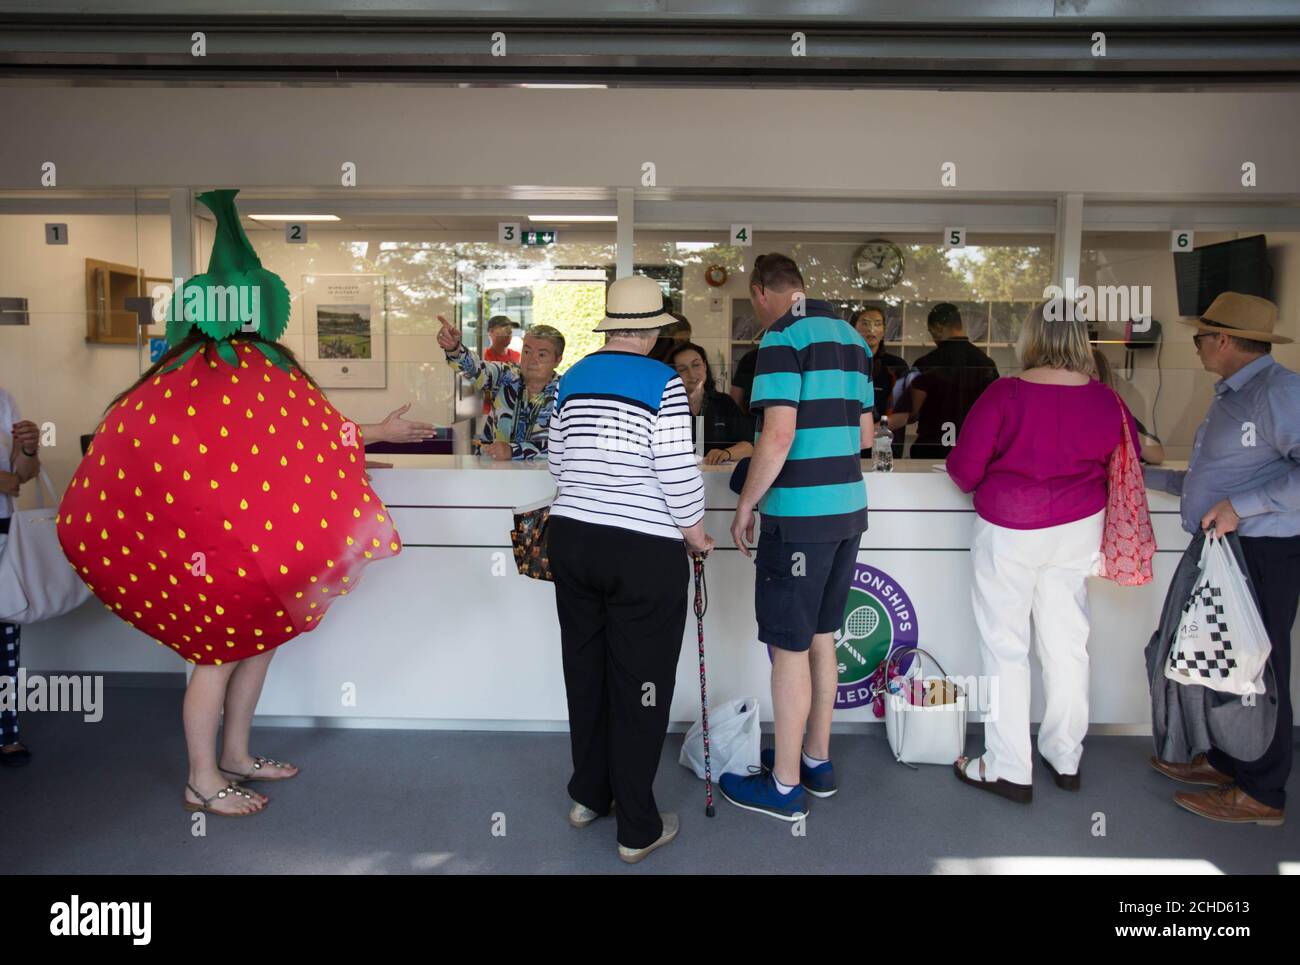 Un militant portant un costume de fraise wonky rejoint la file d'attente aux championnats de Wimbledon alors qu'Oddbox, le plus grand programme de boîte de fruits et légumes wonky du Royaume-Uni, fait prendre conscience du gaspillage au sein de l'industrie britannique des fraises, Londres. Banque D'Images